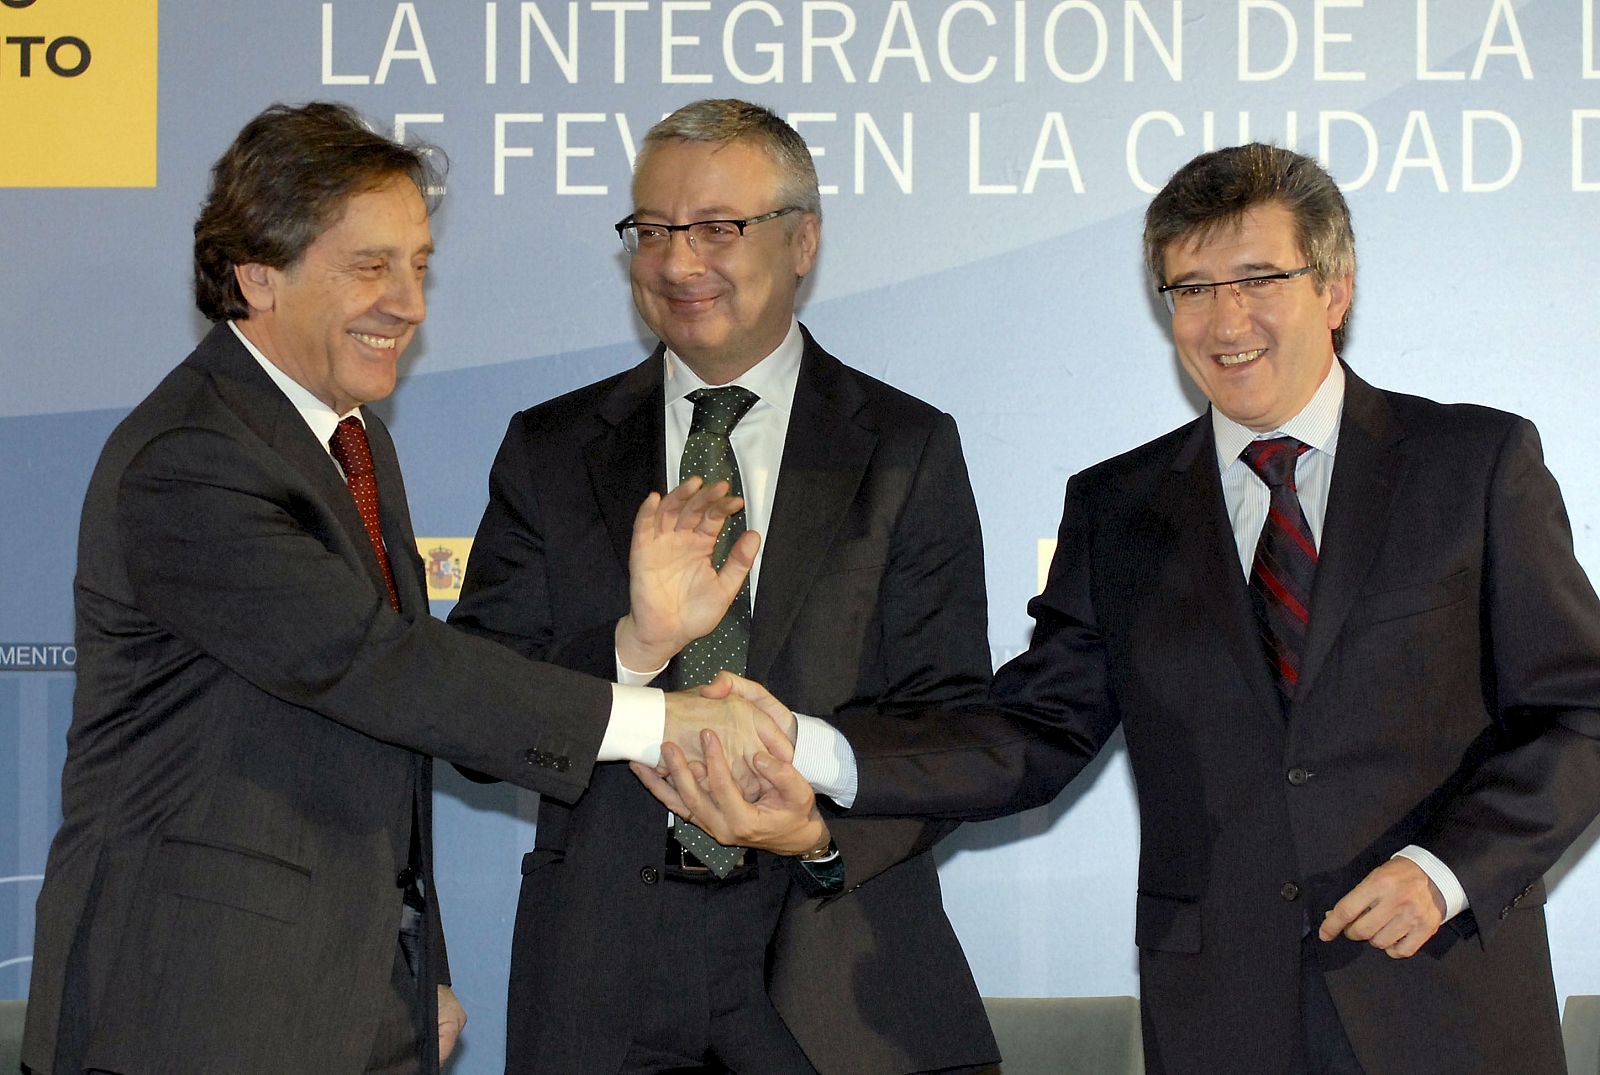 Firma de integración en León de la línea de Feve